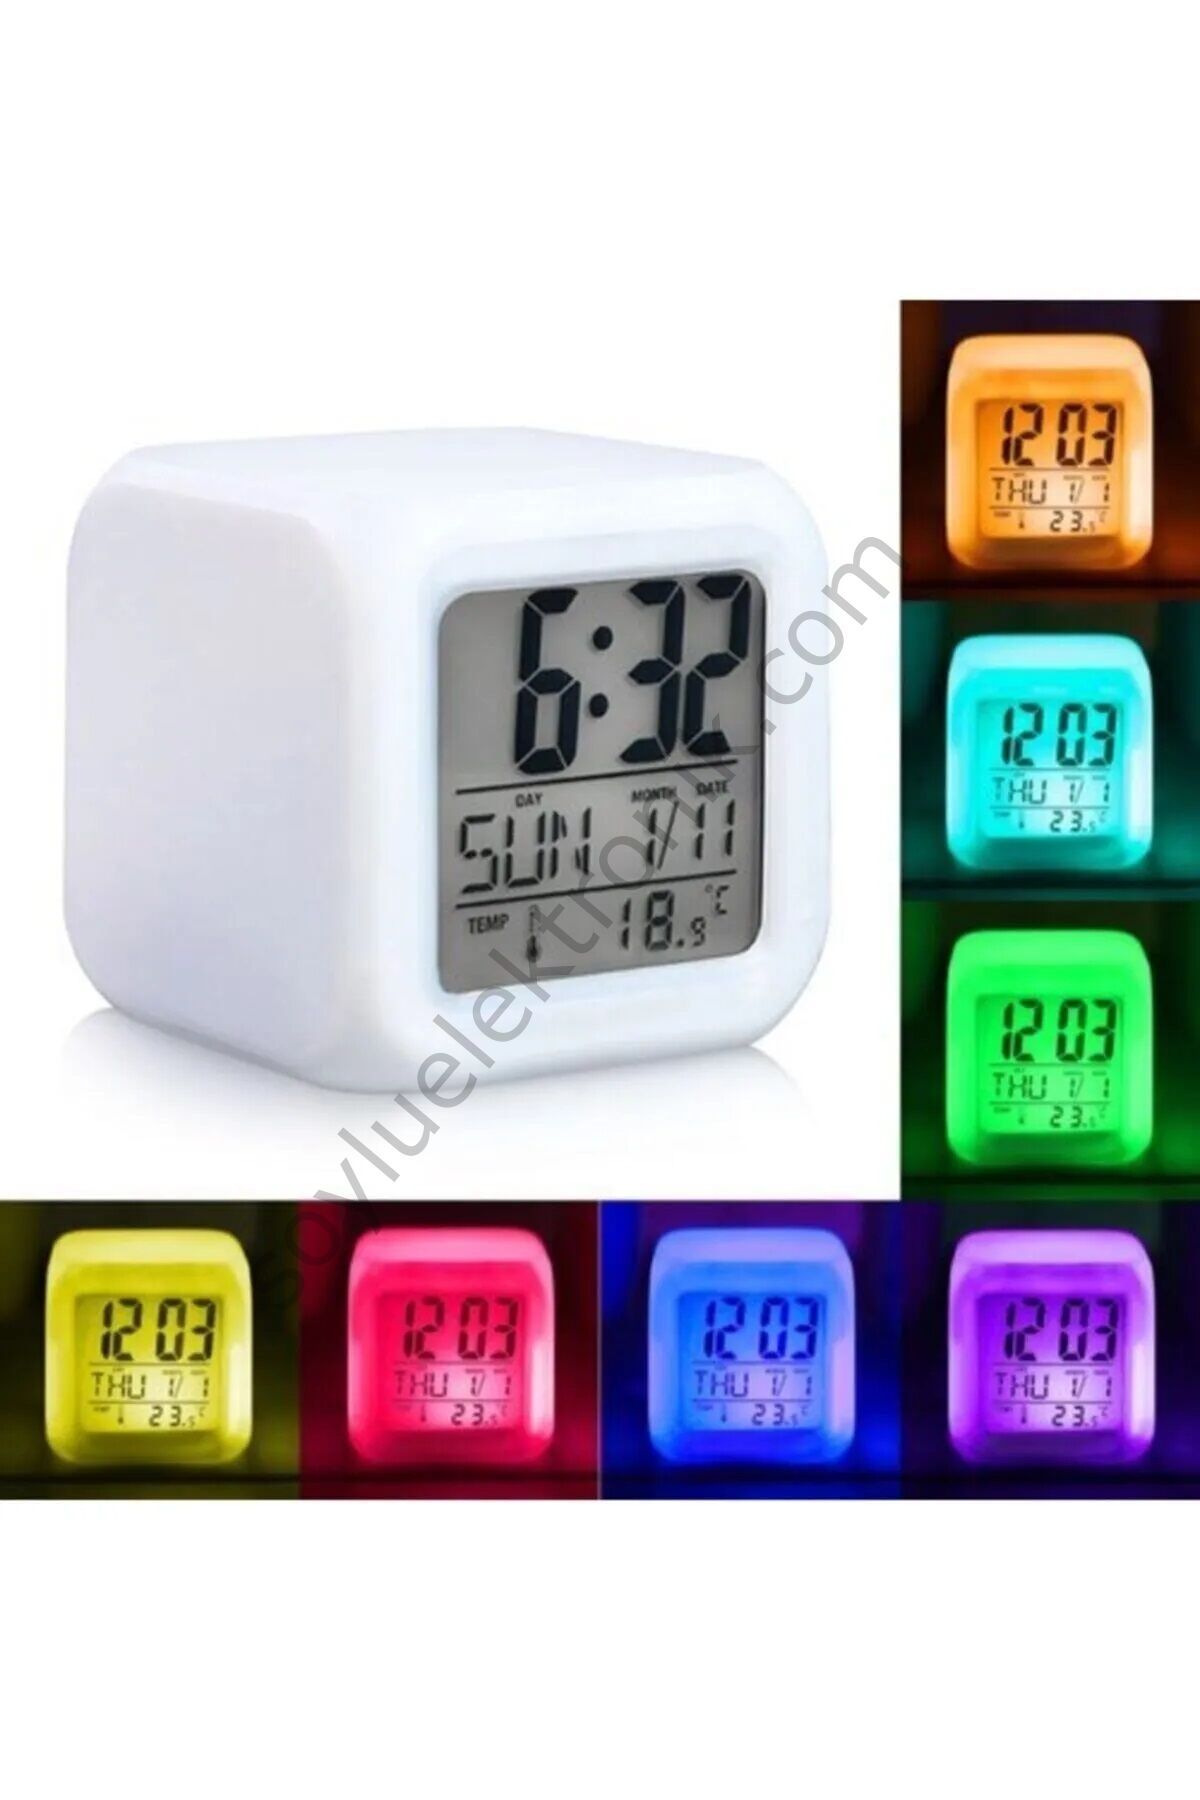 Anunnaki 7 Renk Değiştiren Xxl Dijital LCD Küp Alarmlı Takvim Termometreli Masa Saati Gece Lambası